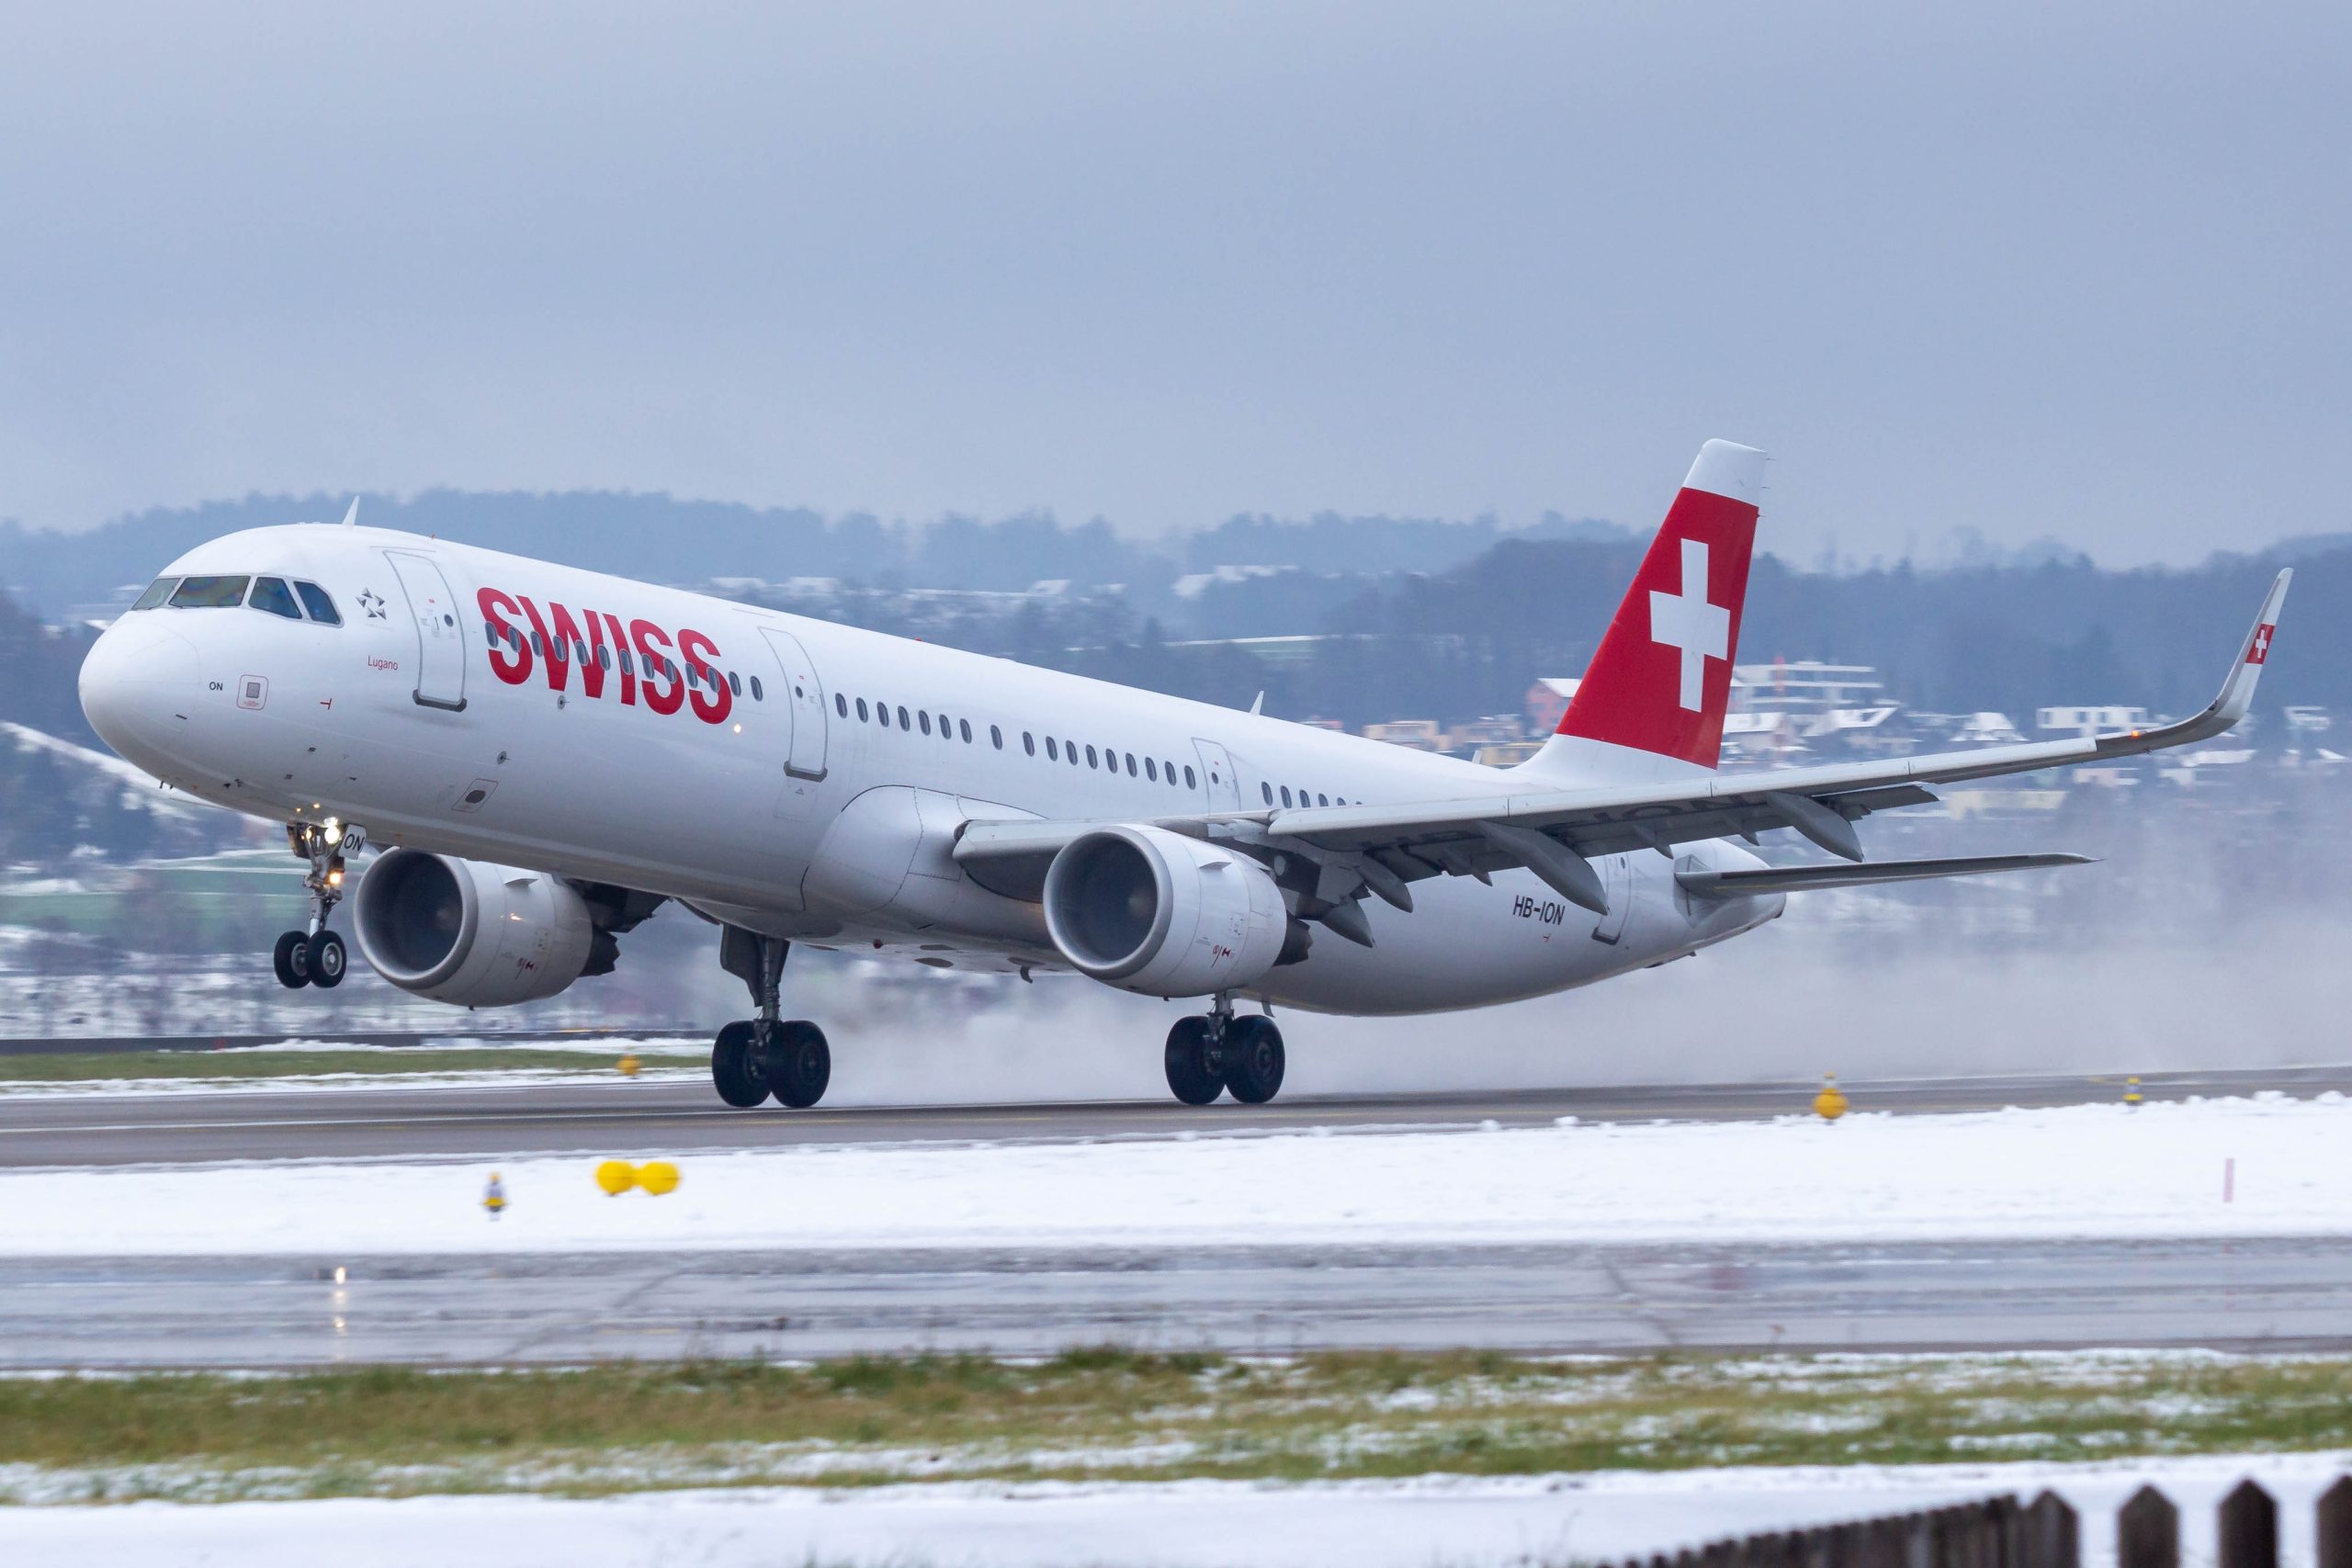 SWISS A321 taking off at Zurich. Photo by Erdem Bileg